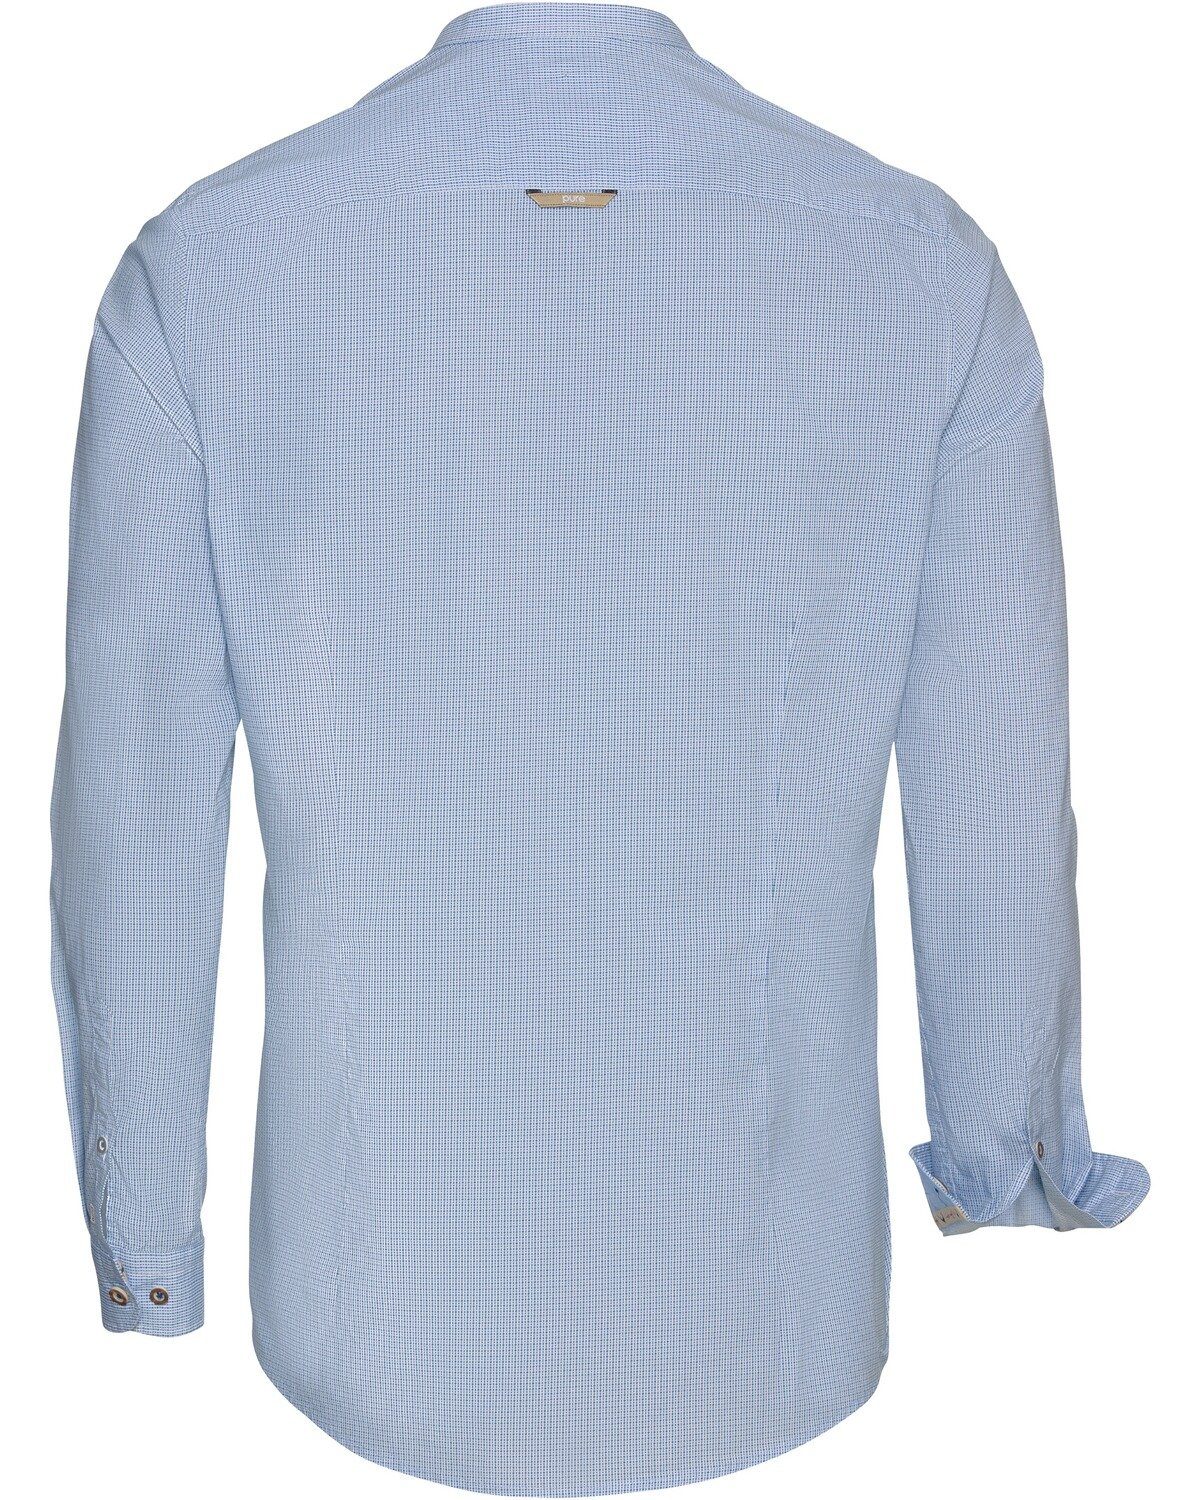 mit Pure Allover-Muster Trachtenhemd Stehkragenhemd Blau